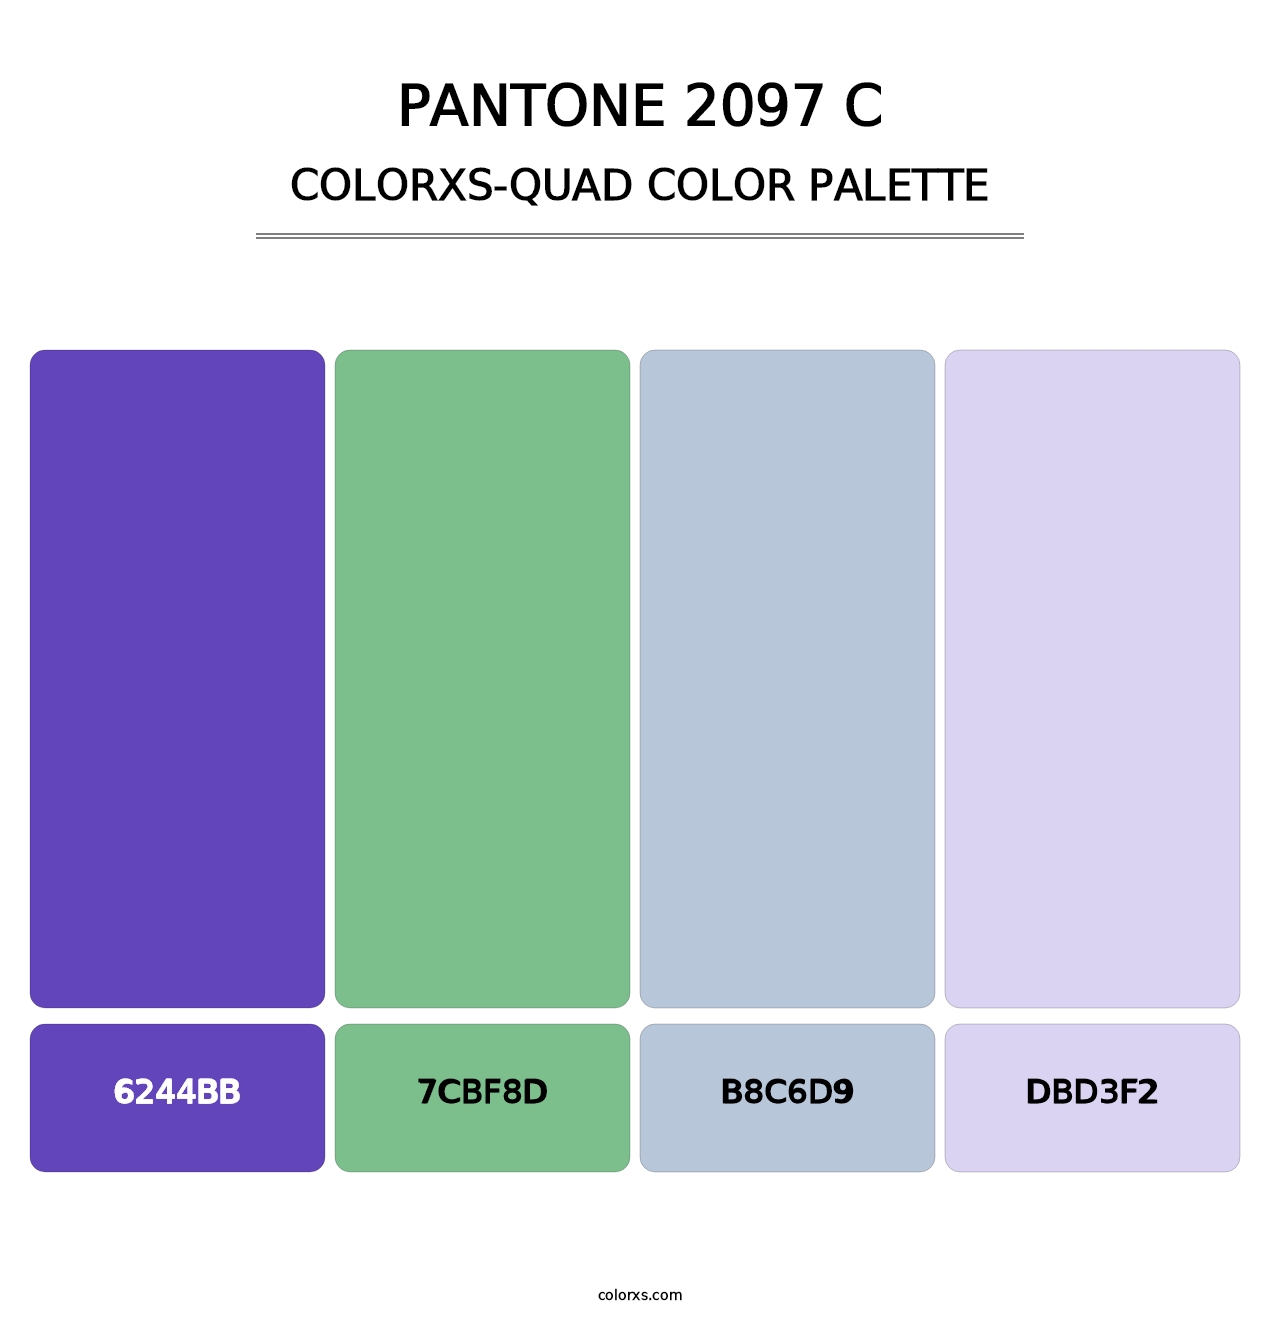 PANTONE 2097 C - Colorxs Quad Palette